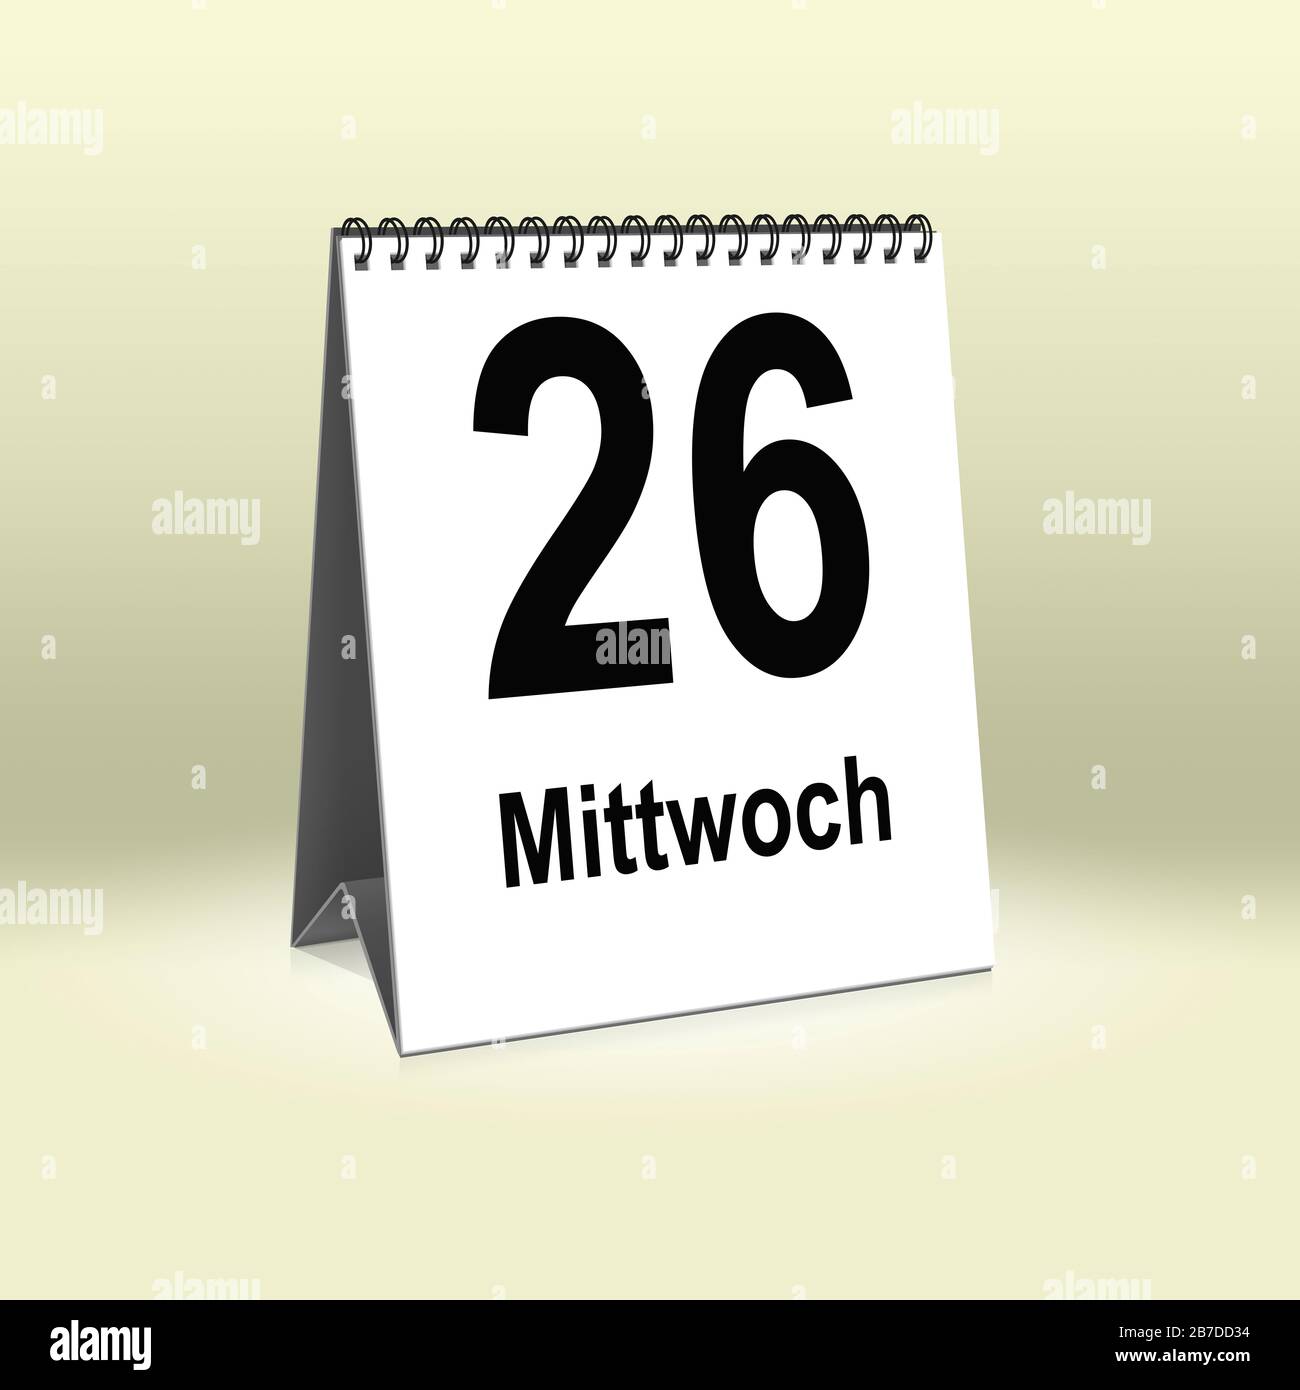 A calendar in German language shows Wednesday 26th | Ein Kalender für den Schreibtisch zeigt Mittwoch 26. Stock Photo